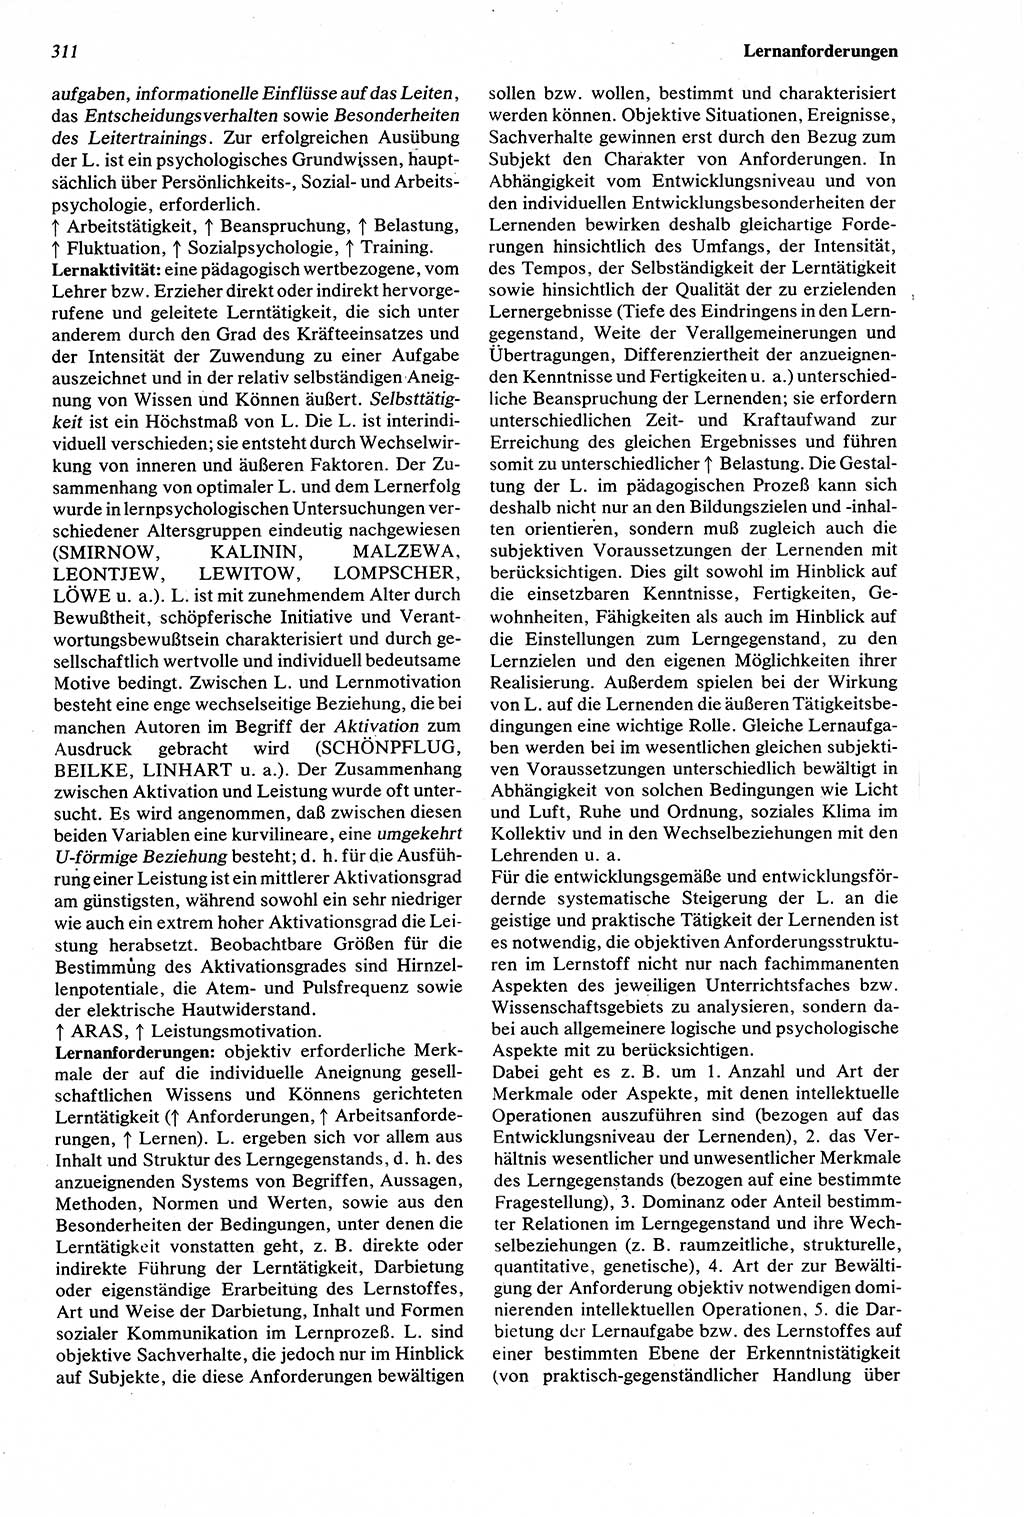 Wörterbuch der Psychologie [Deutsche Demokratische Republik (DDR)] 1976, Seite 311 (Wb. Psych. DDR 1976, S. 311)